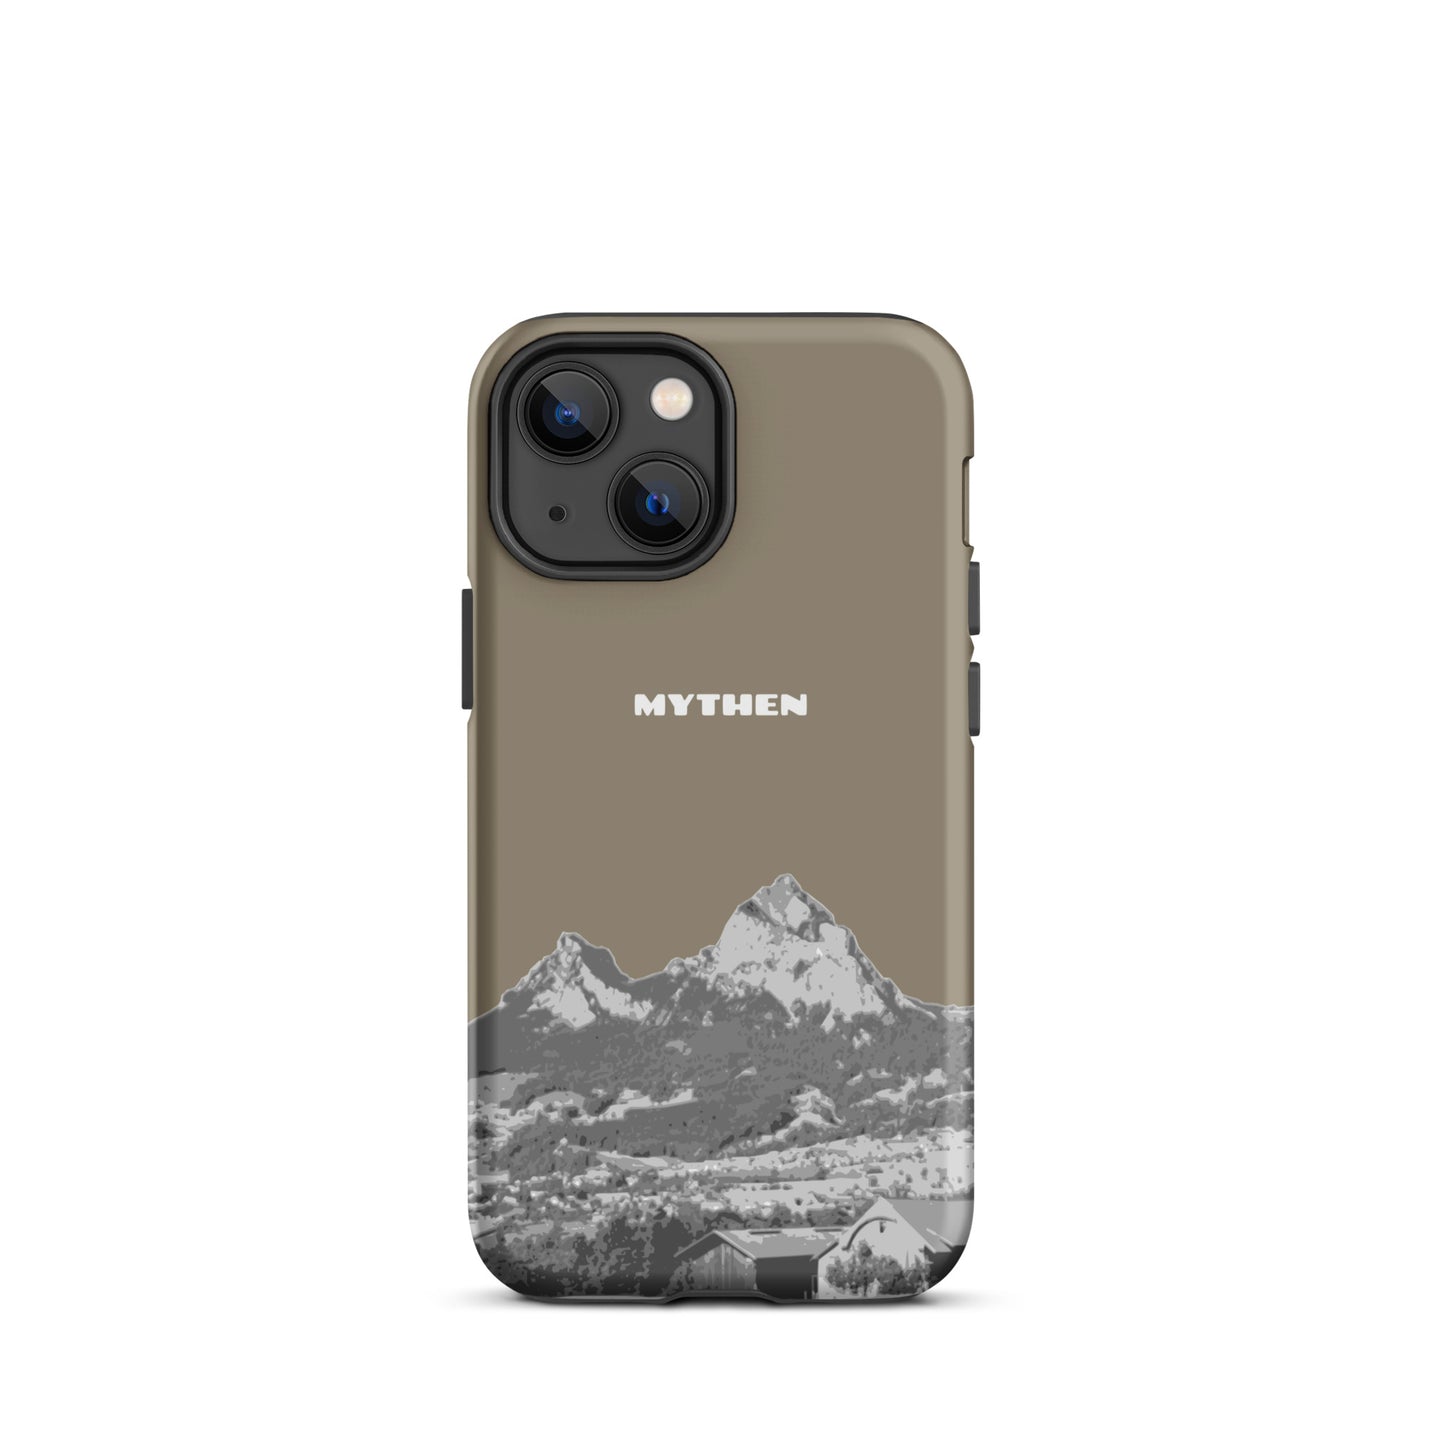 Hülle für das iPhone 13 mini von Apple in der Farbe Graubraun, dass den Grossen Mythen und den Kleinen Mythen bei Schwyz zeigt. 